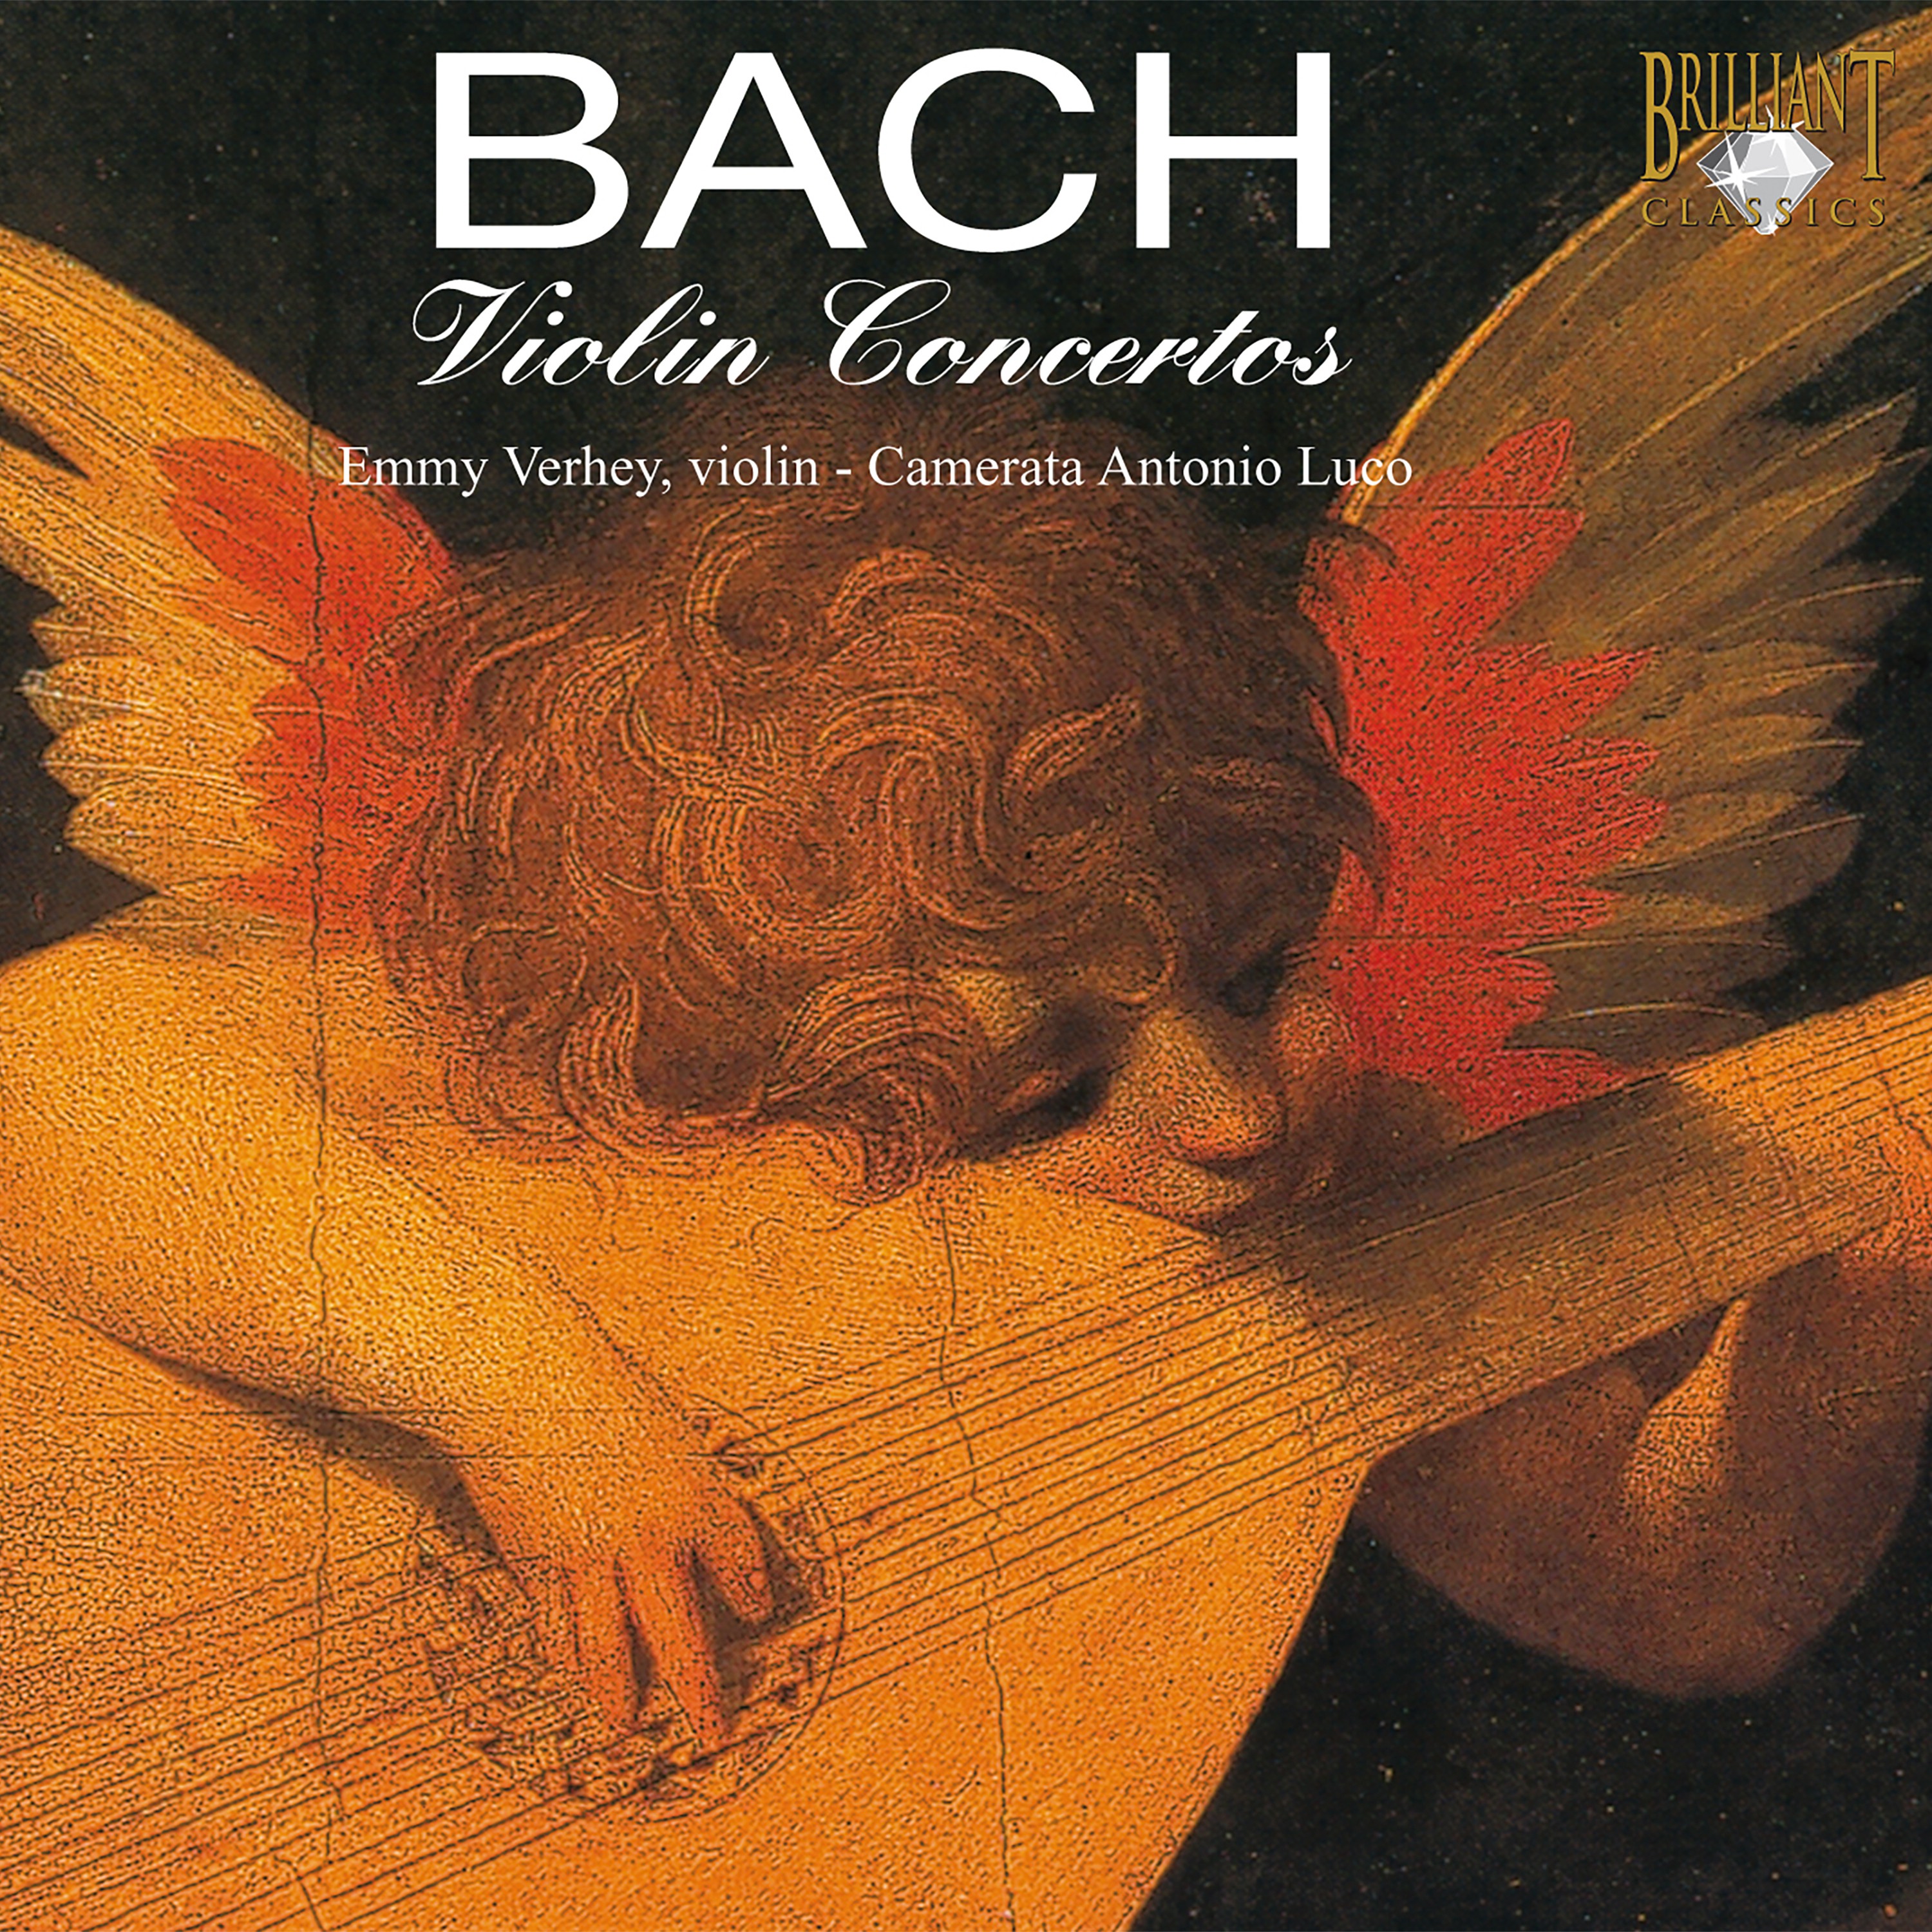 Violin Concerto in E Major, BWV 1042: Adagio